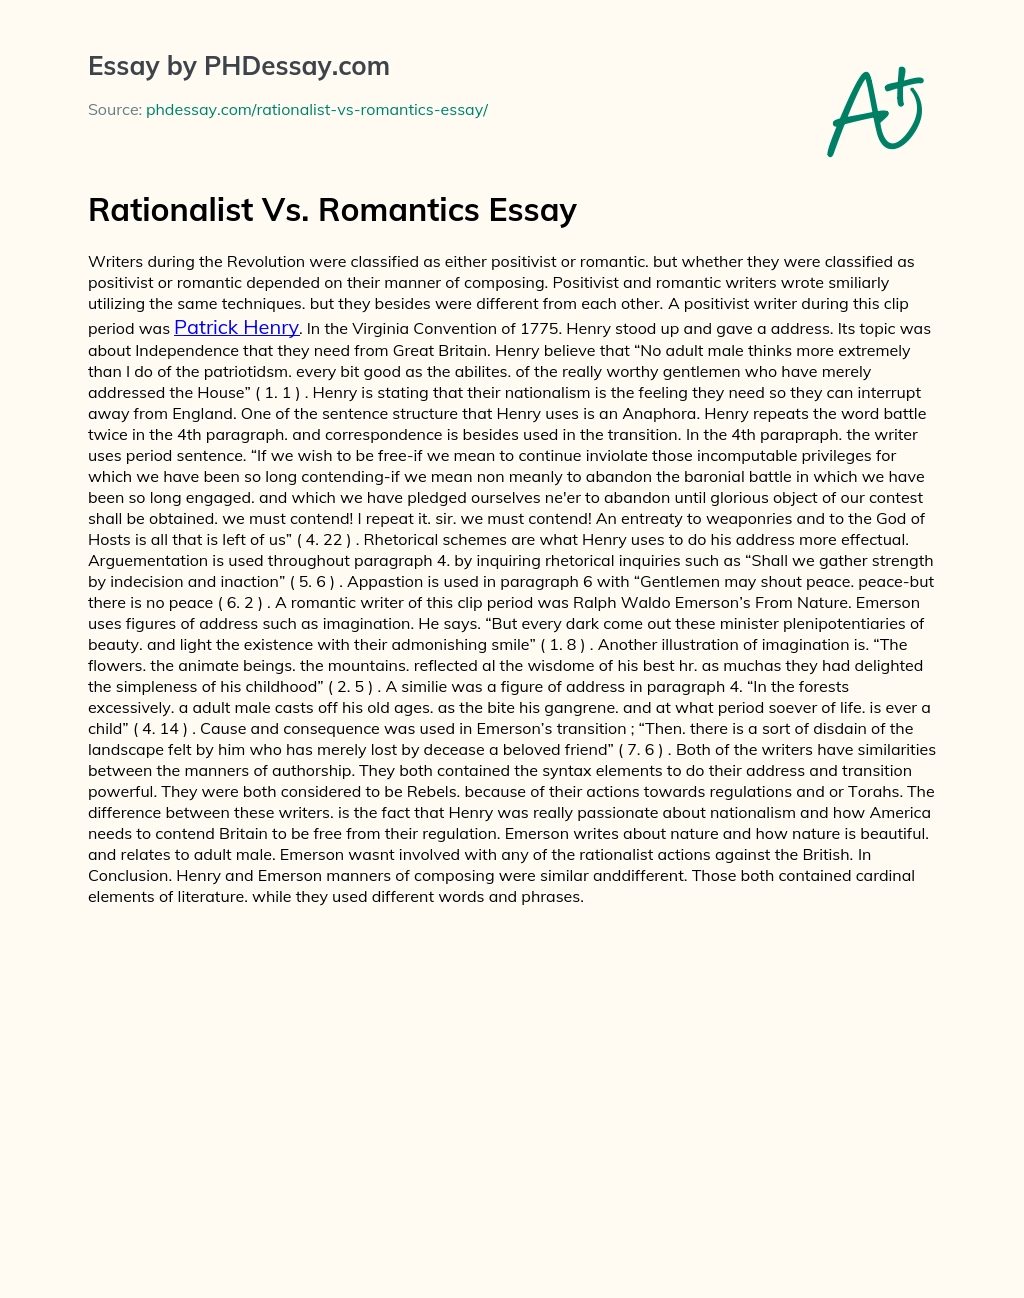 Rationalist Vs. Romantics Essay essay